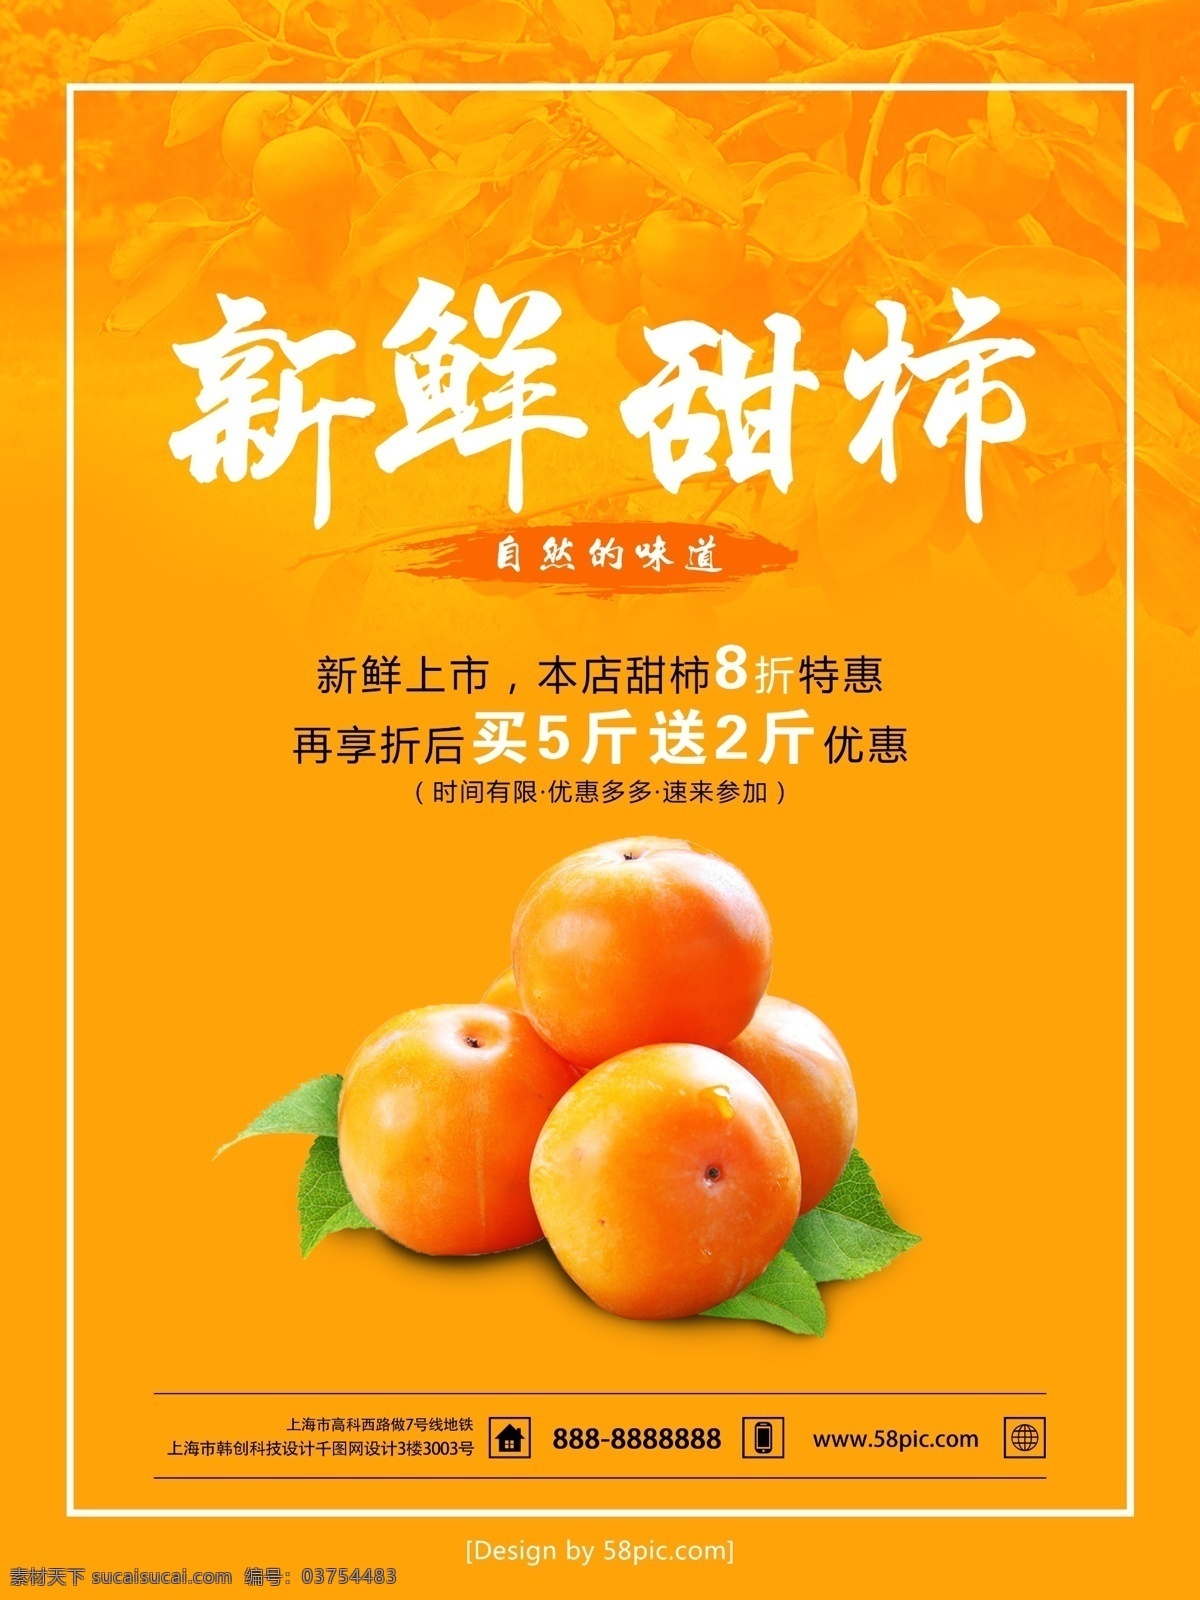 黄色 简约 水果店 新鲜 甜柿 促销 海报 水果 柿子 新鲜甜柿 促销海报 活动海报 宣传海报